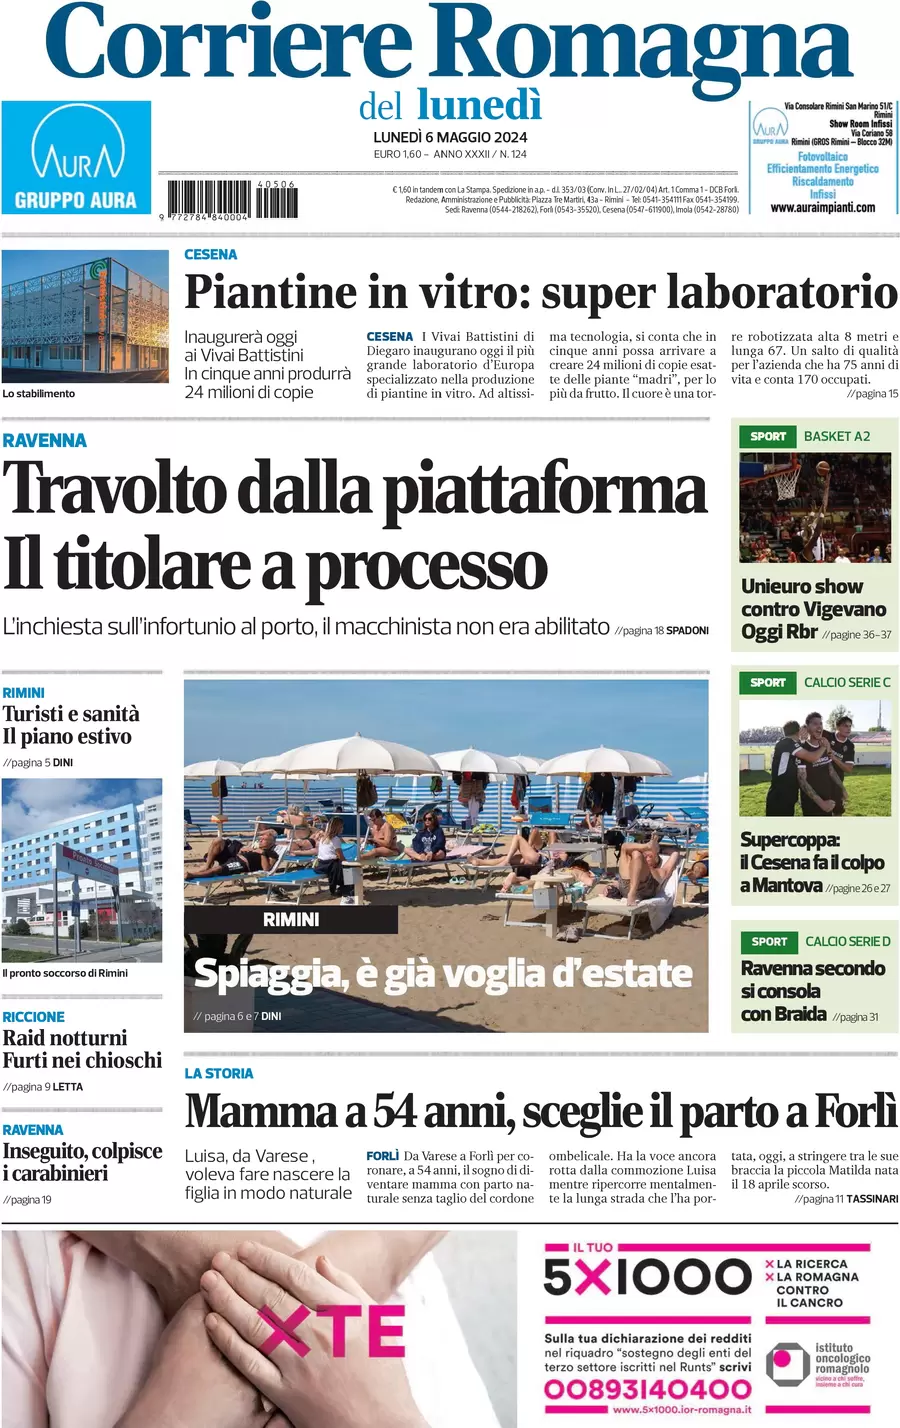 anteprima della prima pagina di Corriere Romagna (Rimini e San Marino)